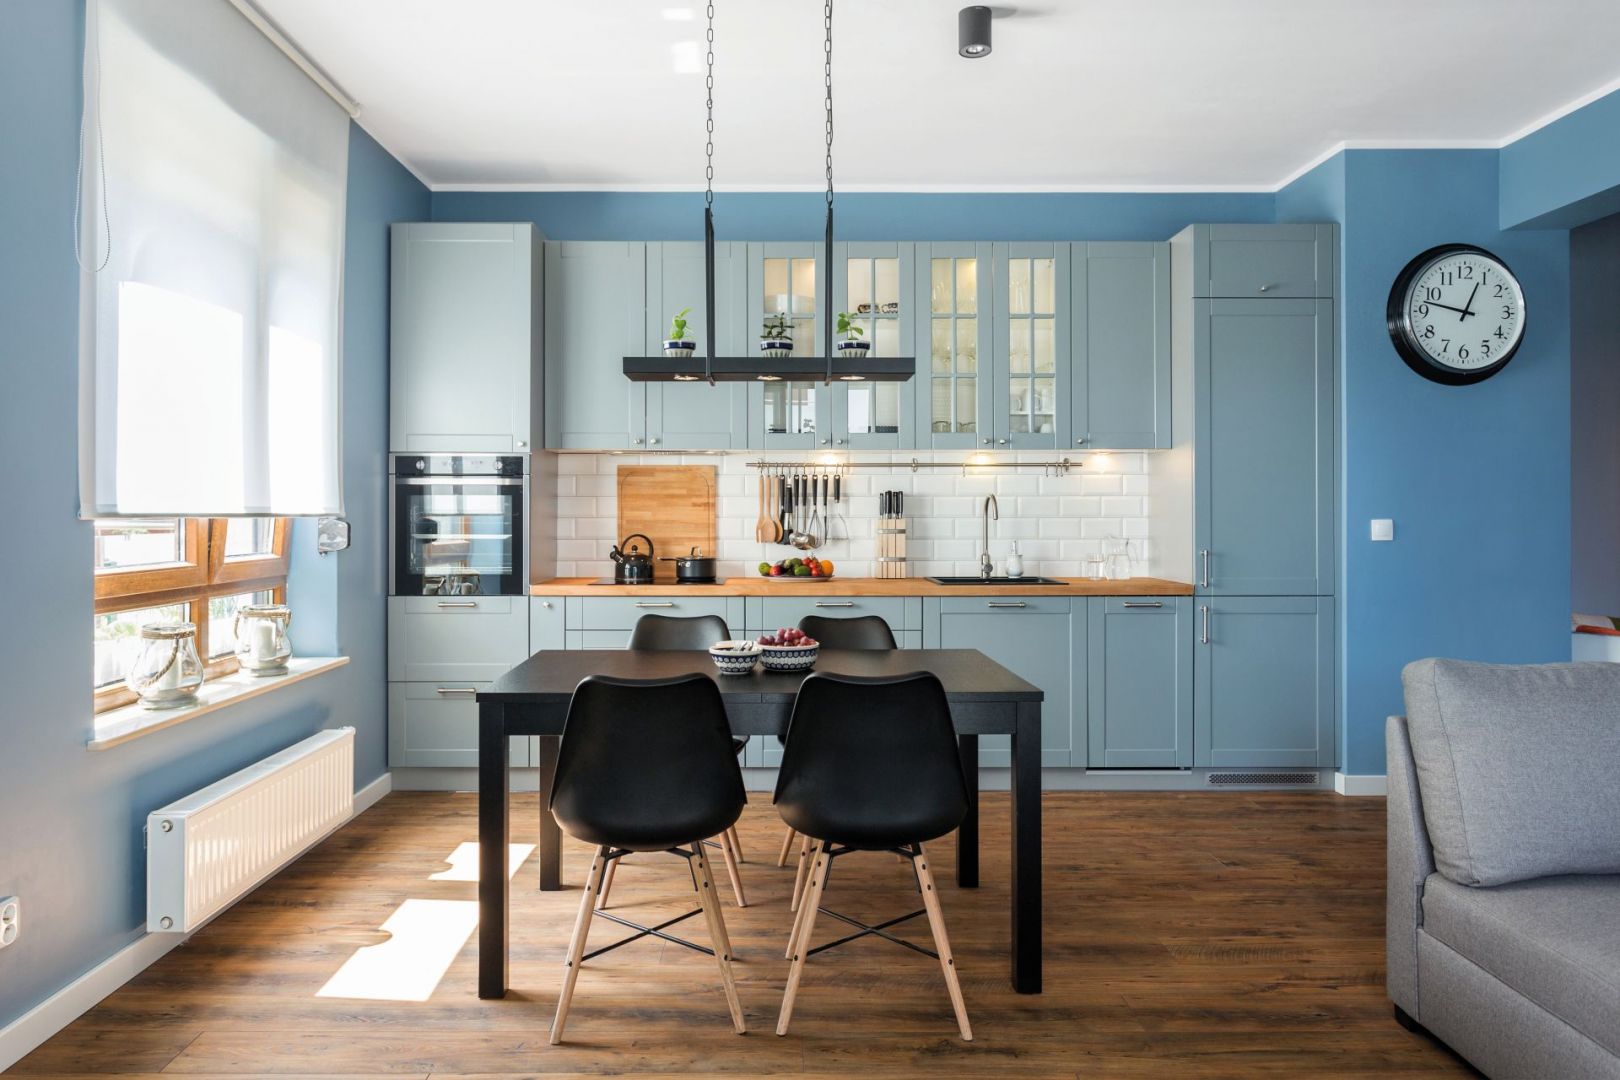 Błękit doskonale prezentuje się w klasycznych aranżacjach kuchennych. Sprawia, że wnętrze jest eleganckie, ale jednocześnie bardzo świeże. Fot. Studio Max Kuchnie